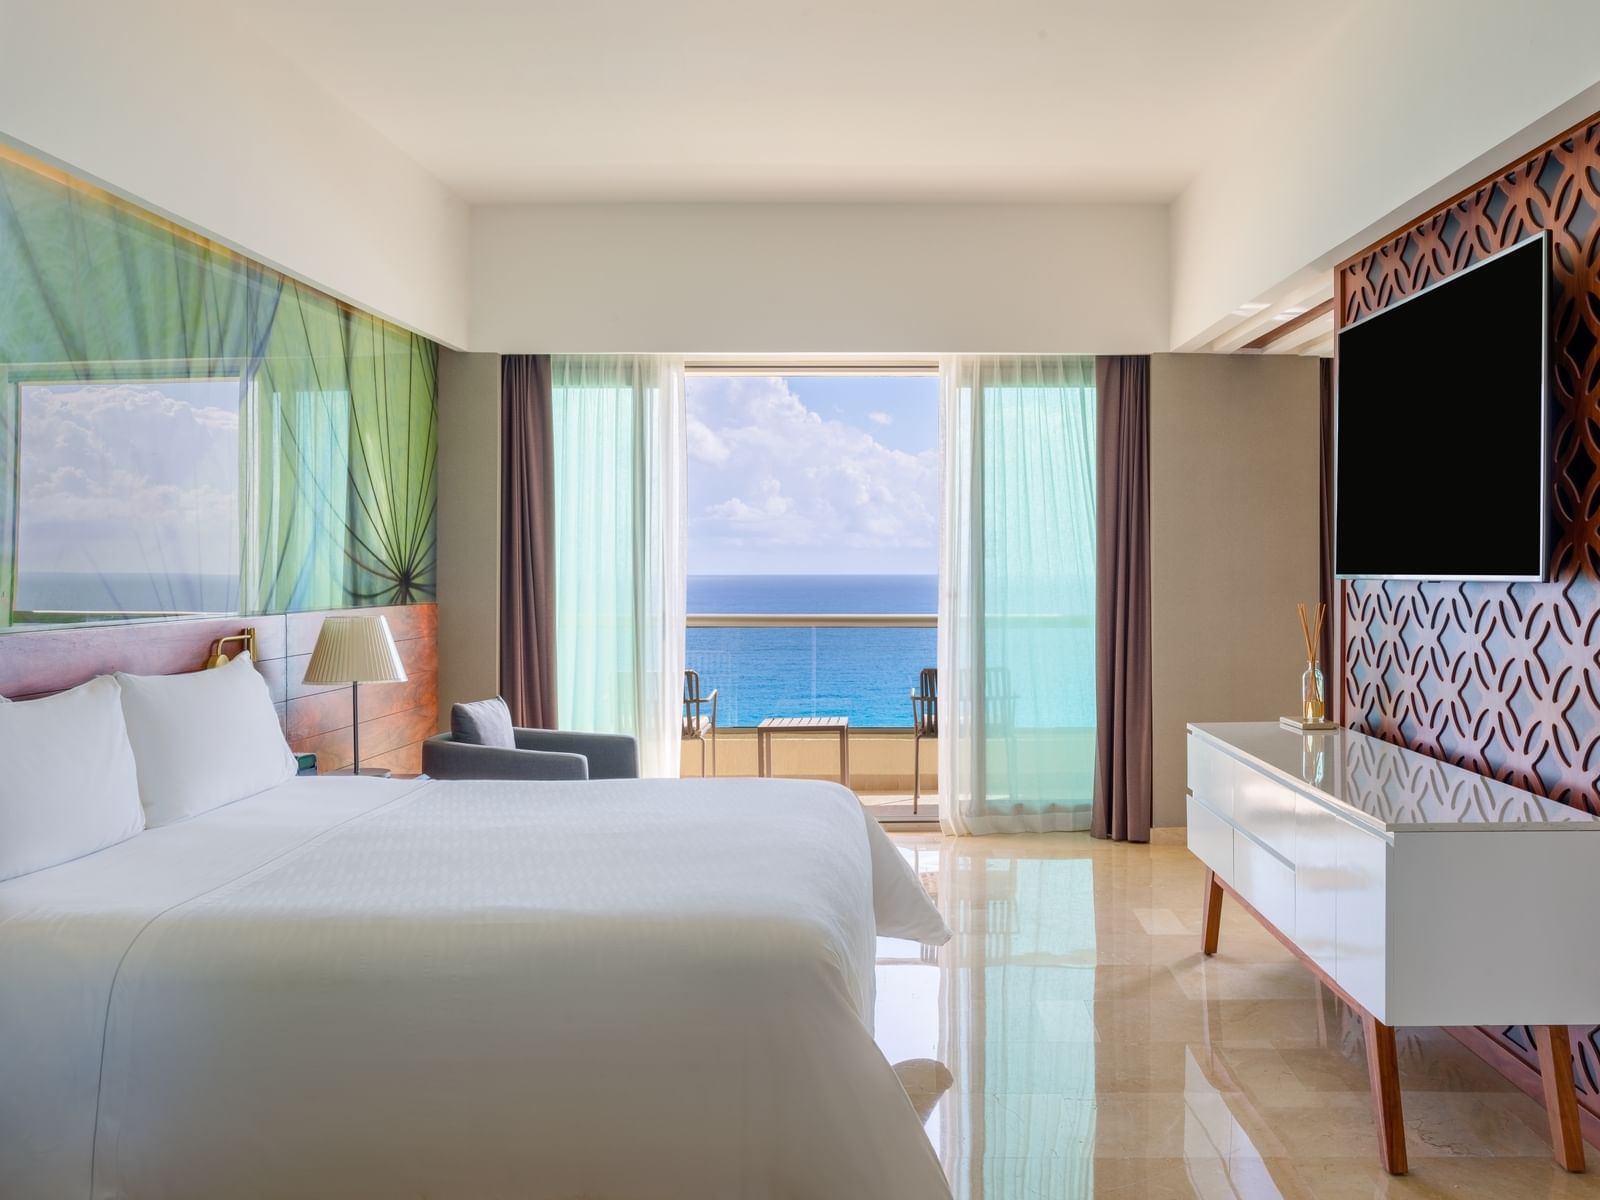 Tierra suite at Live Aqua Beach Resort Cancun